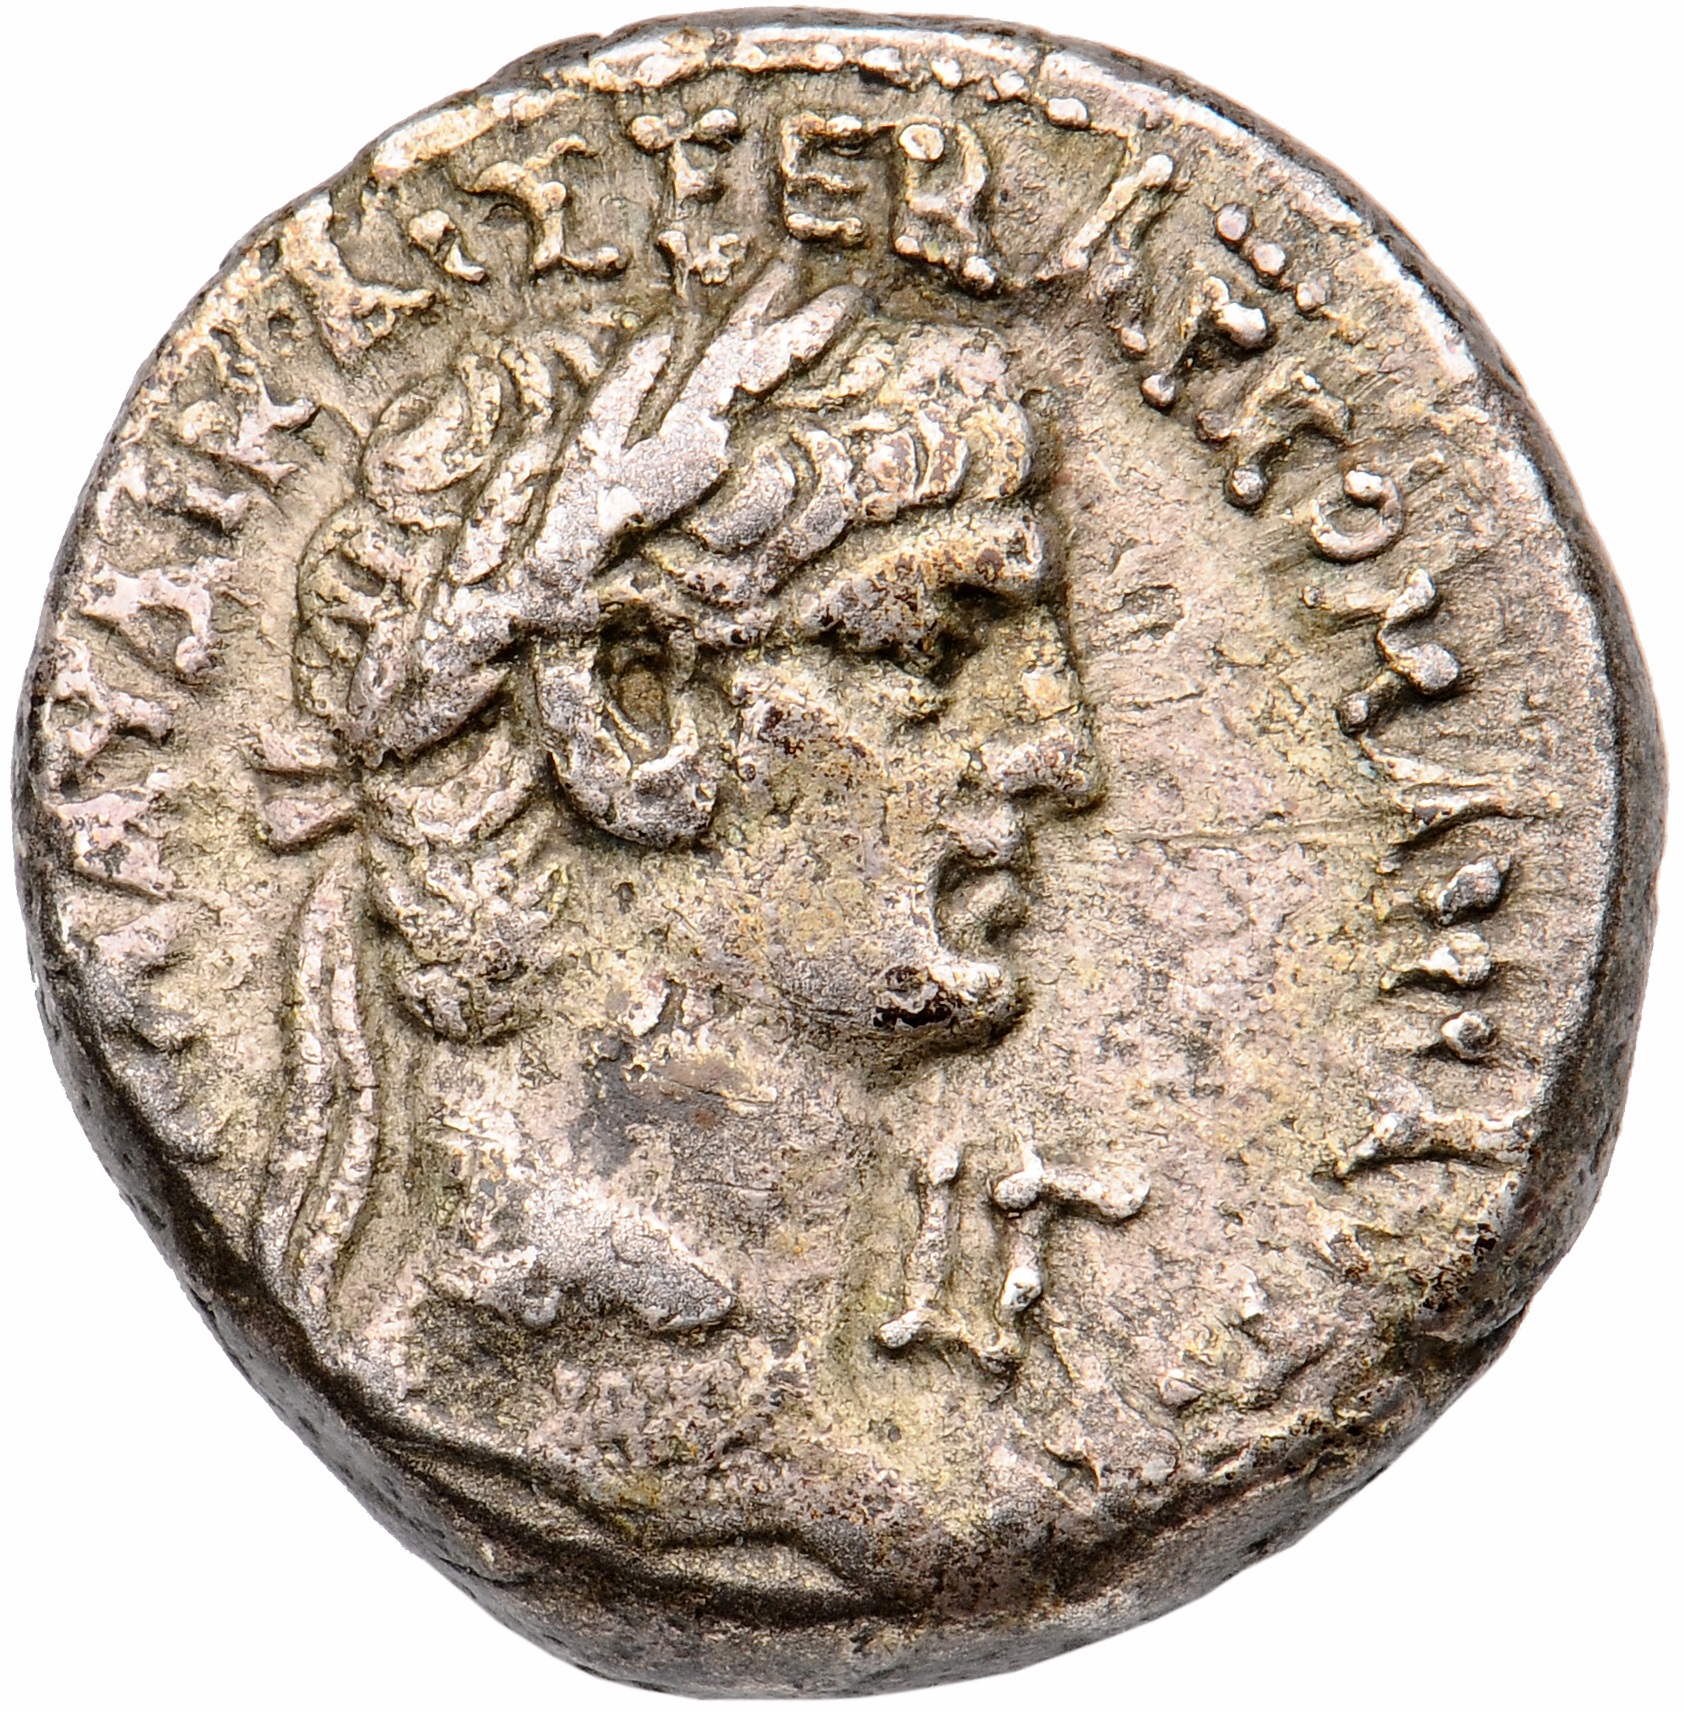 Alexandria ad Aegyptum: Claudius